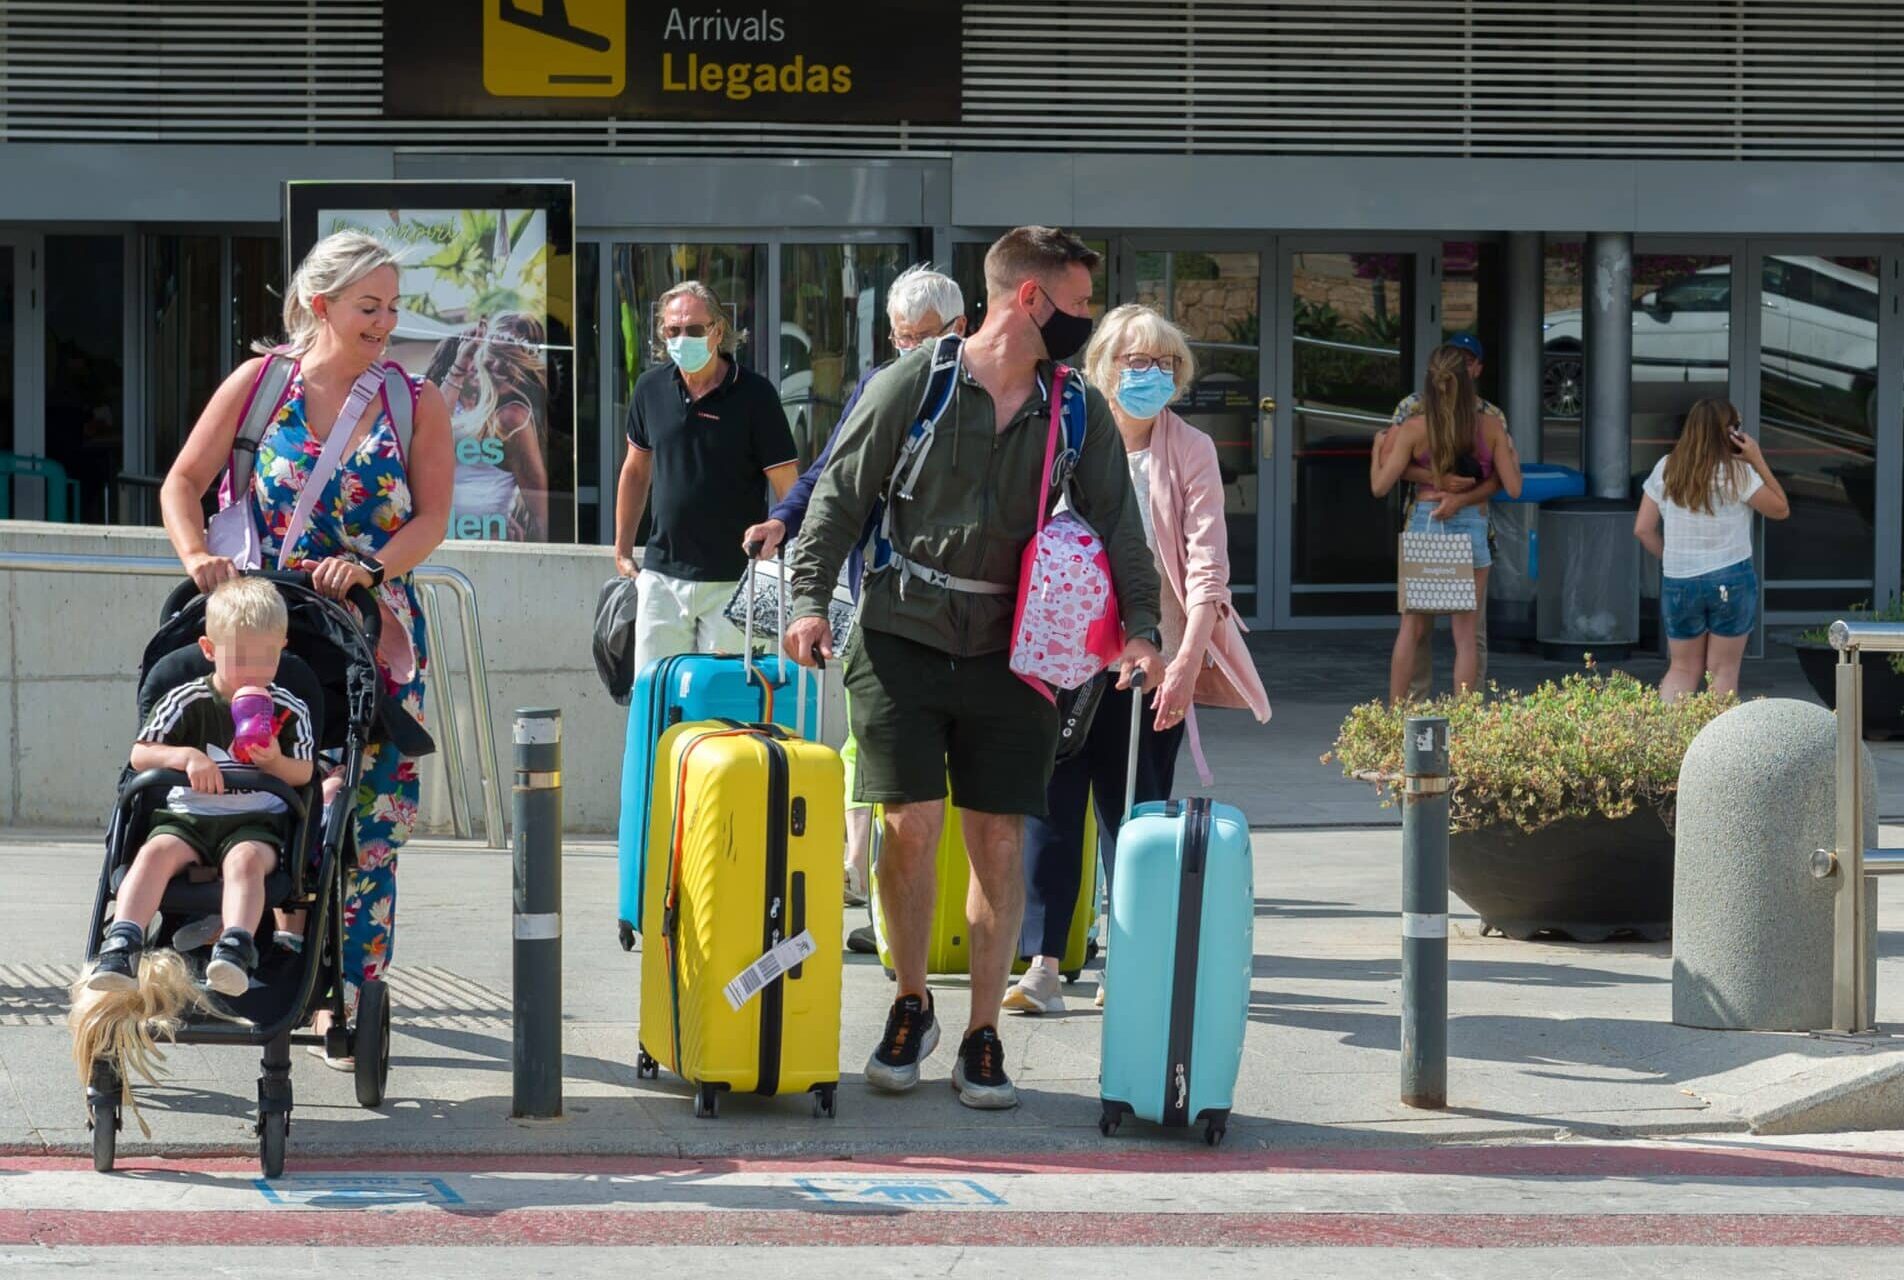 Imagen de varios turistas procedentes de Reino Unido llegando a un aeropuerto español.